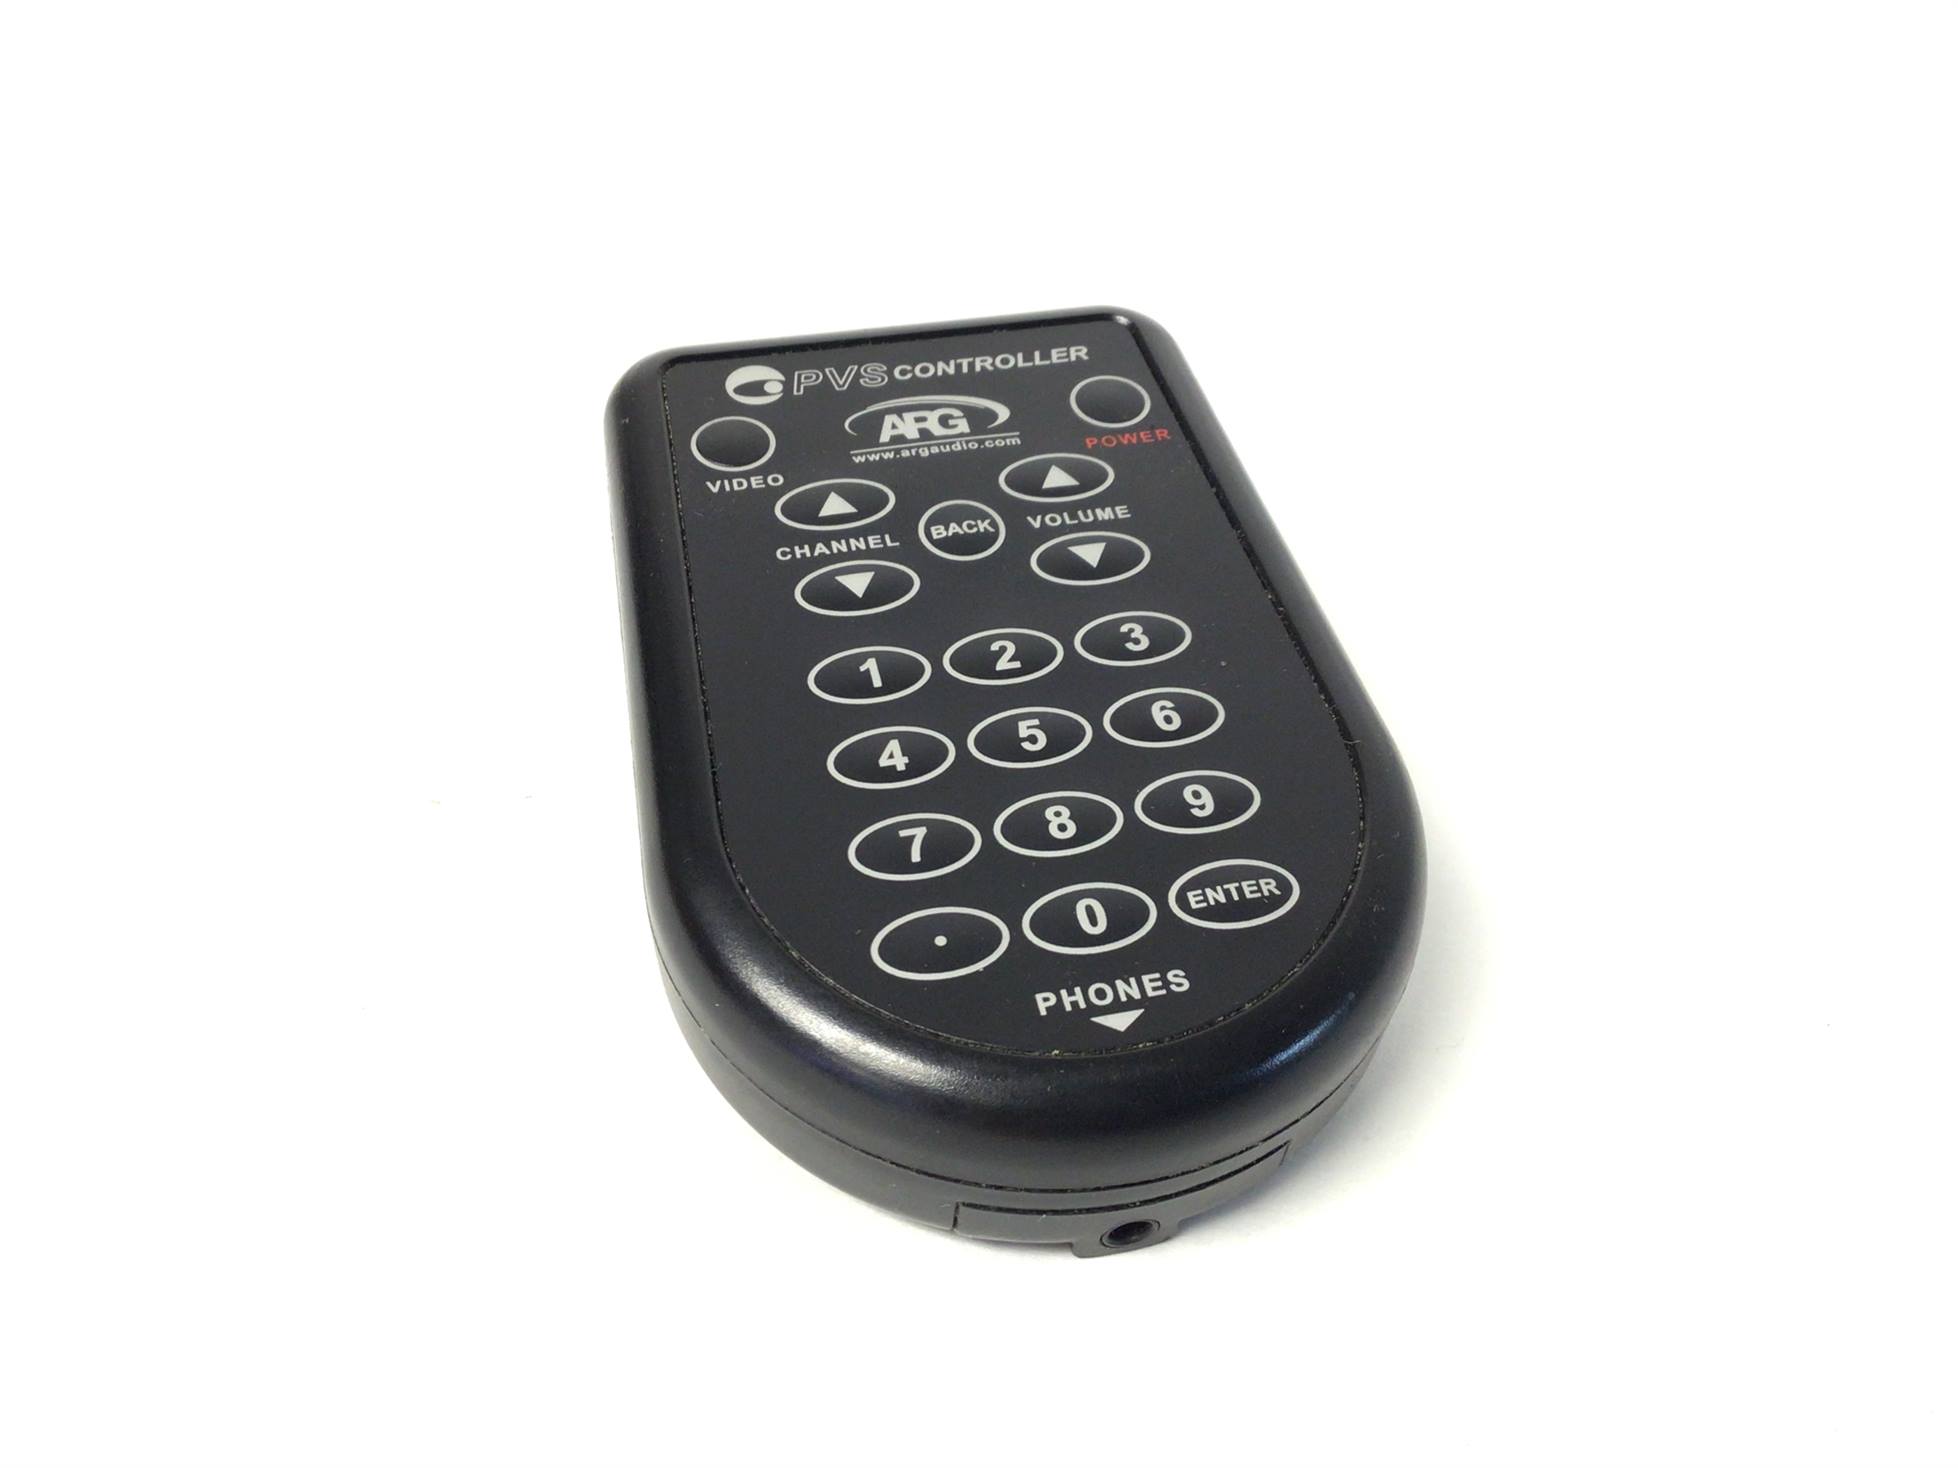 Console Board Cable PVS Remote Control (Used)